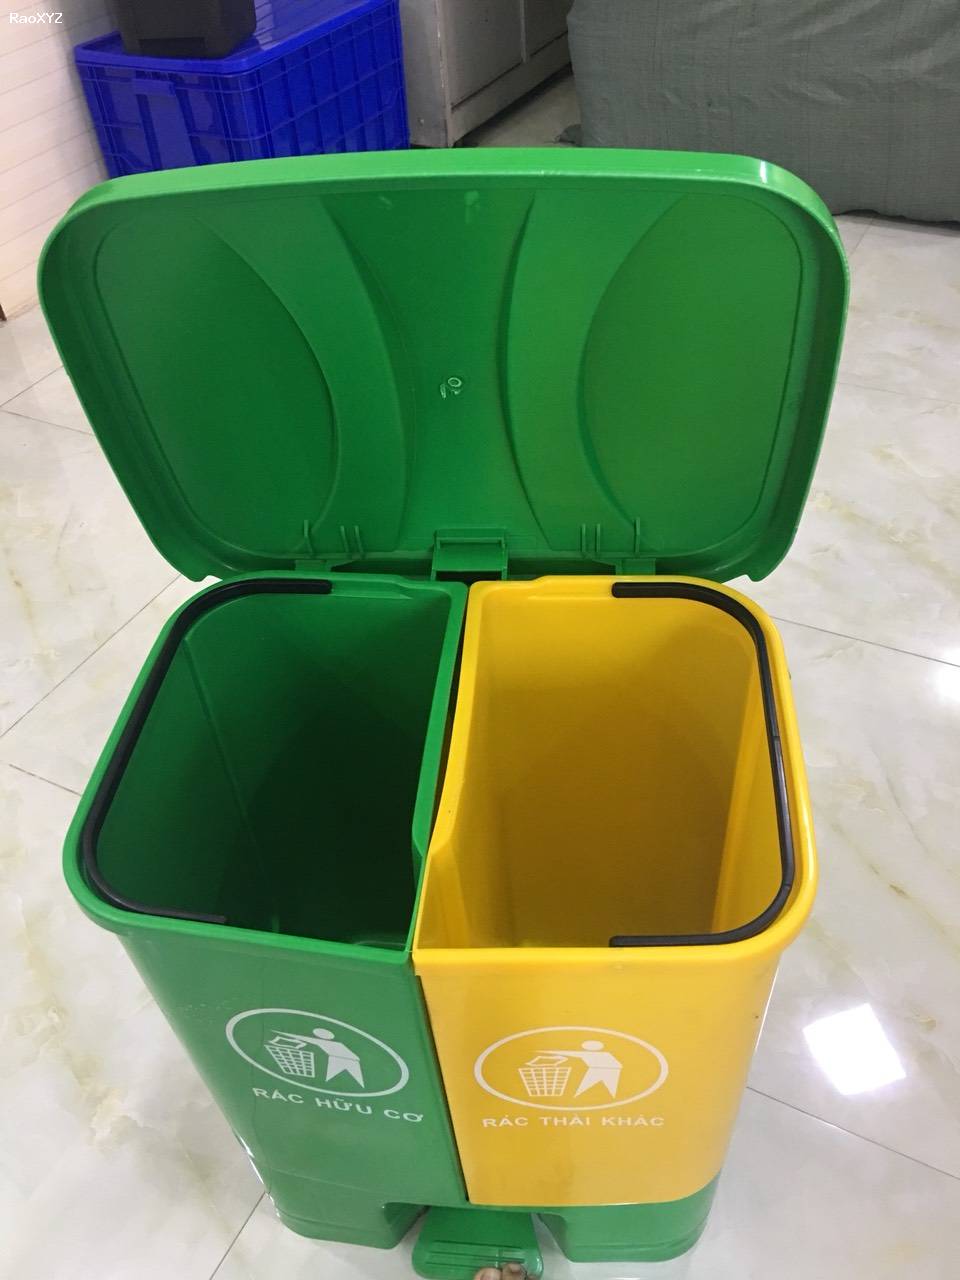 Thùng rác nhựa đạp chân 2 ngăn 40 lít phân loại rác giá rẻ - 096 3839 597 Ms Kính